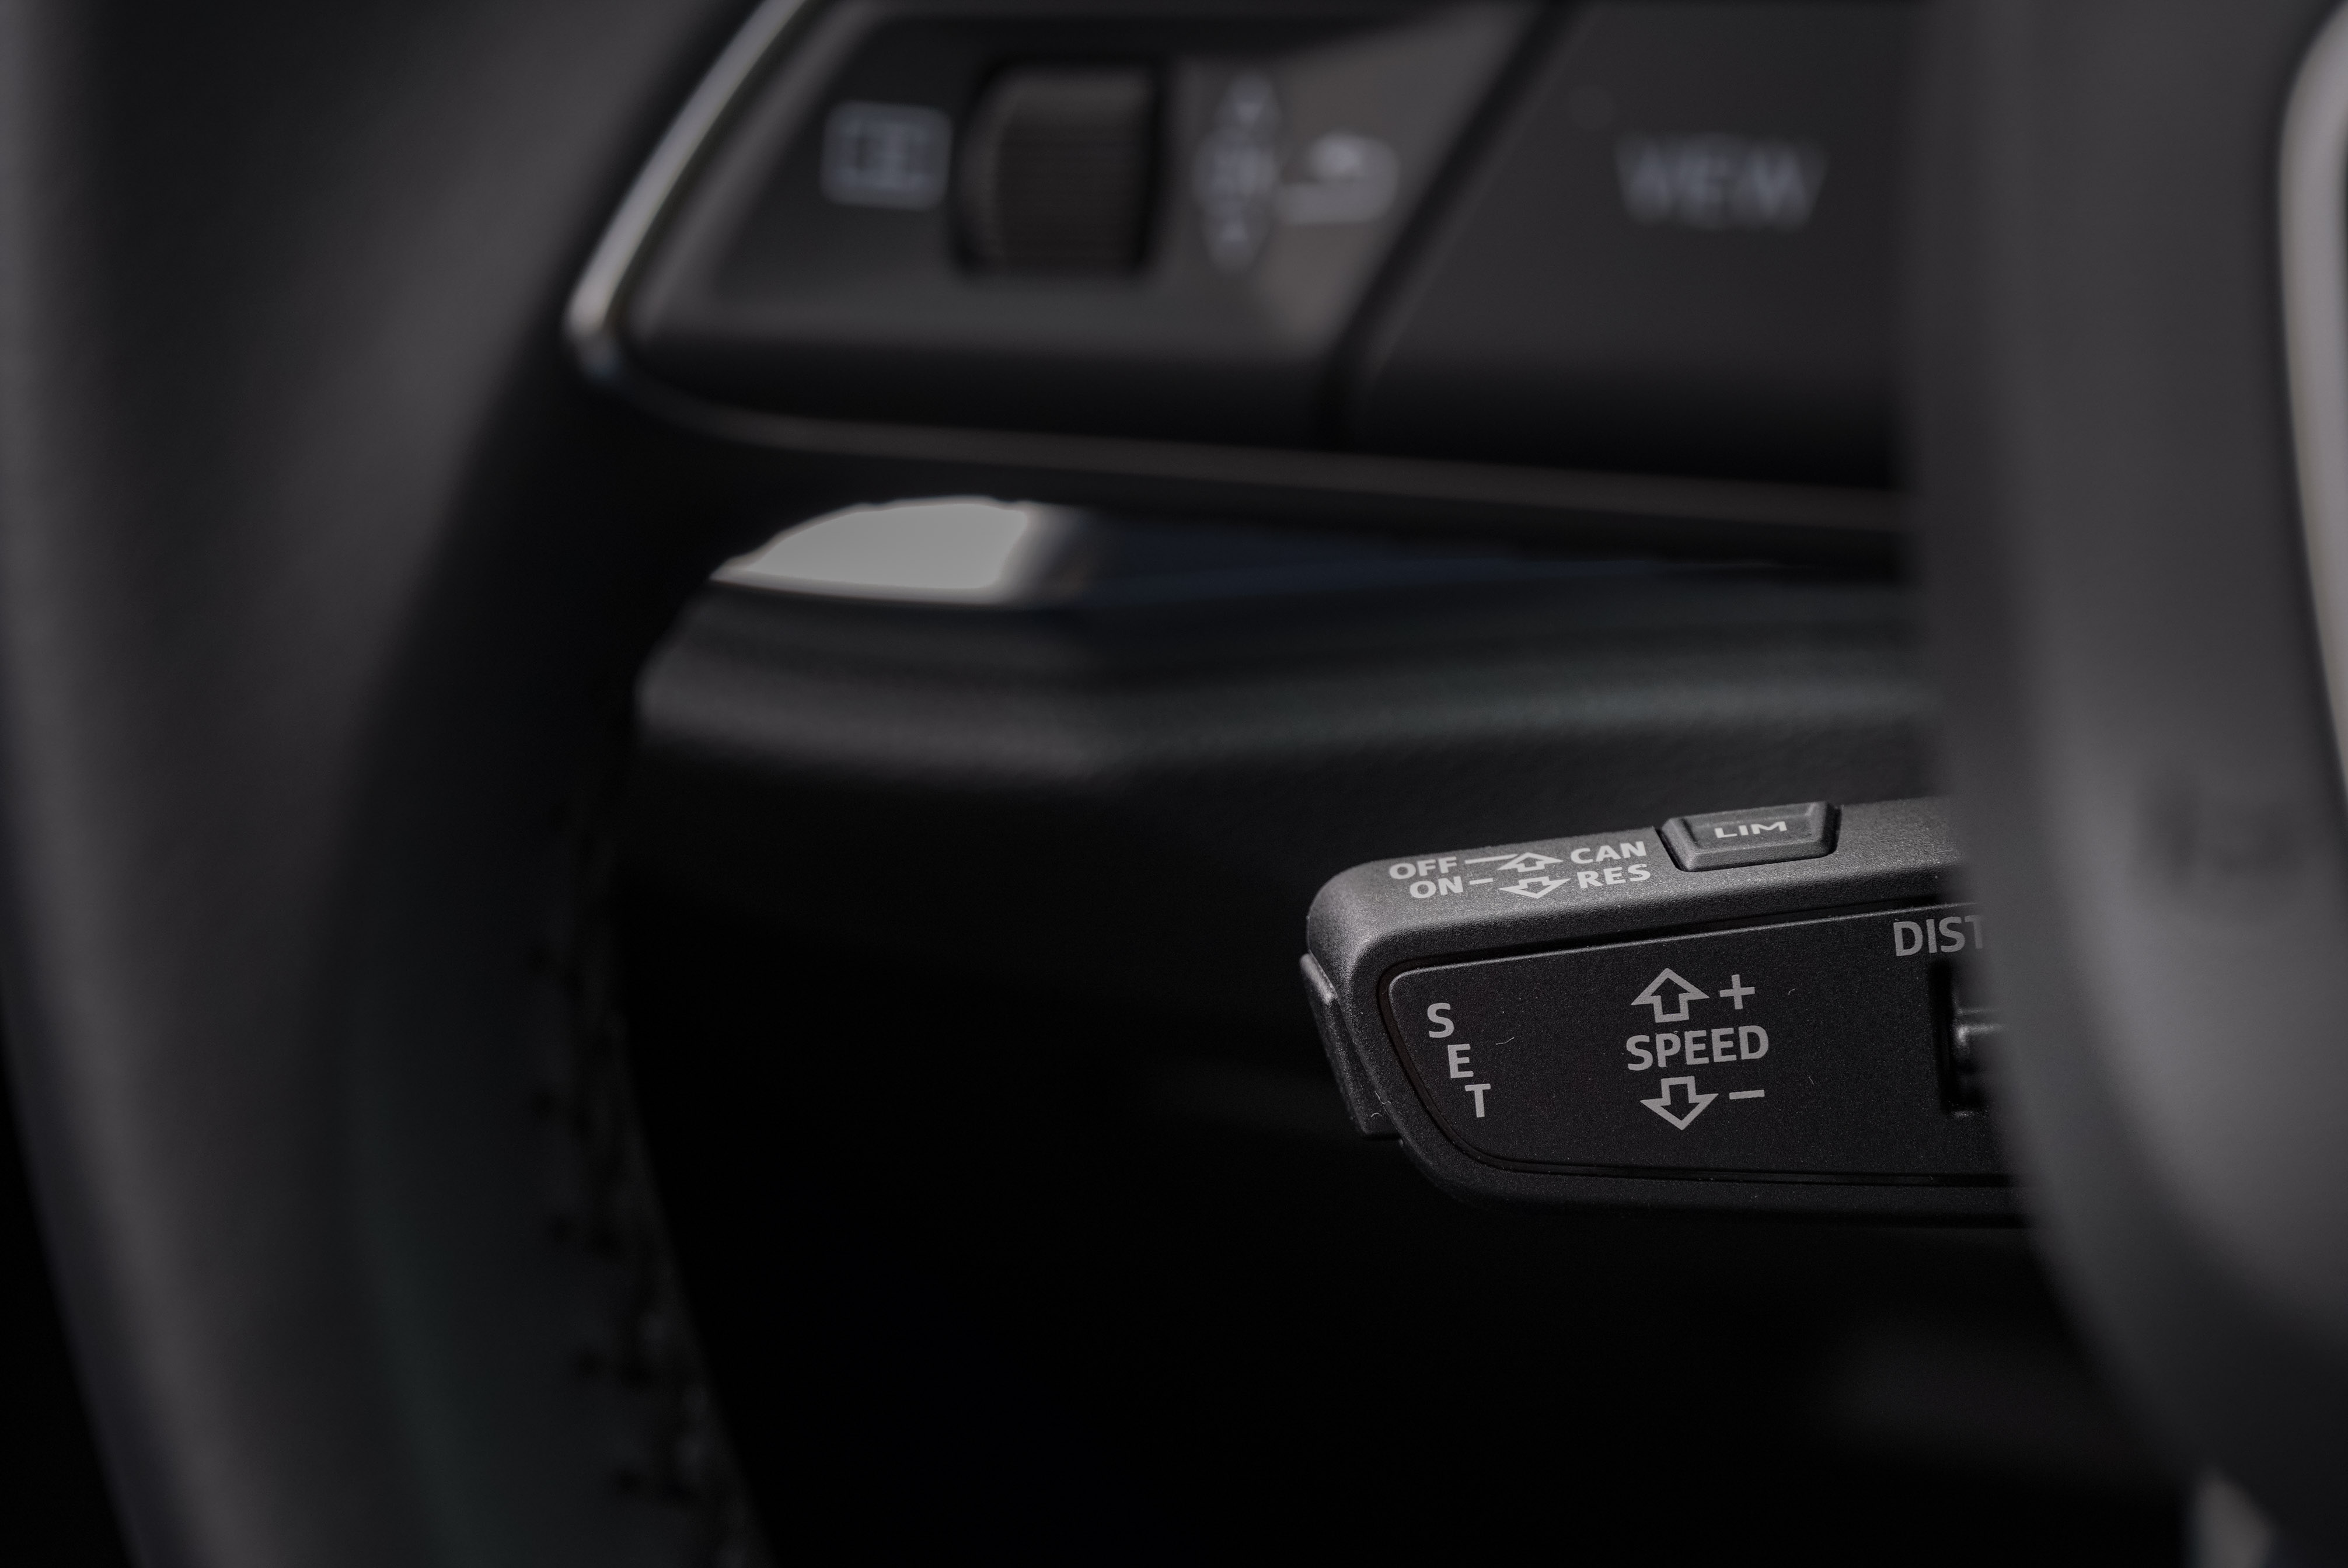 標配 ACC 主動式定速巡航控制系統、Audi lane assist 主動式車道維持及偏離警示系統、Audi side assist 車道變換輔助系統 (盲點警示) 等。